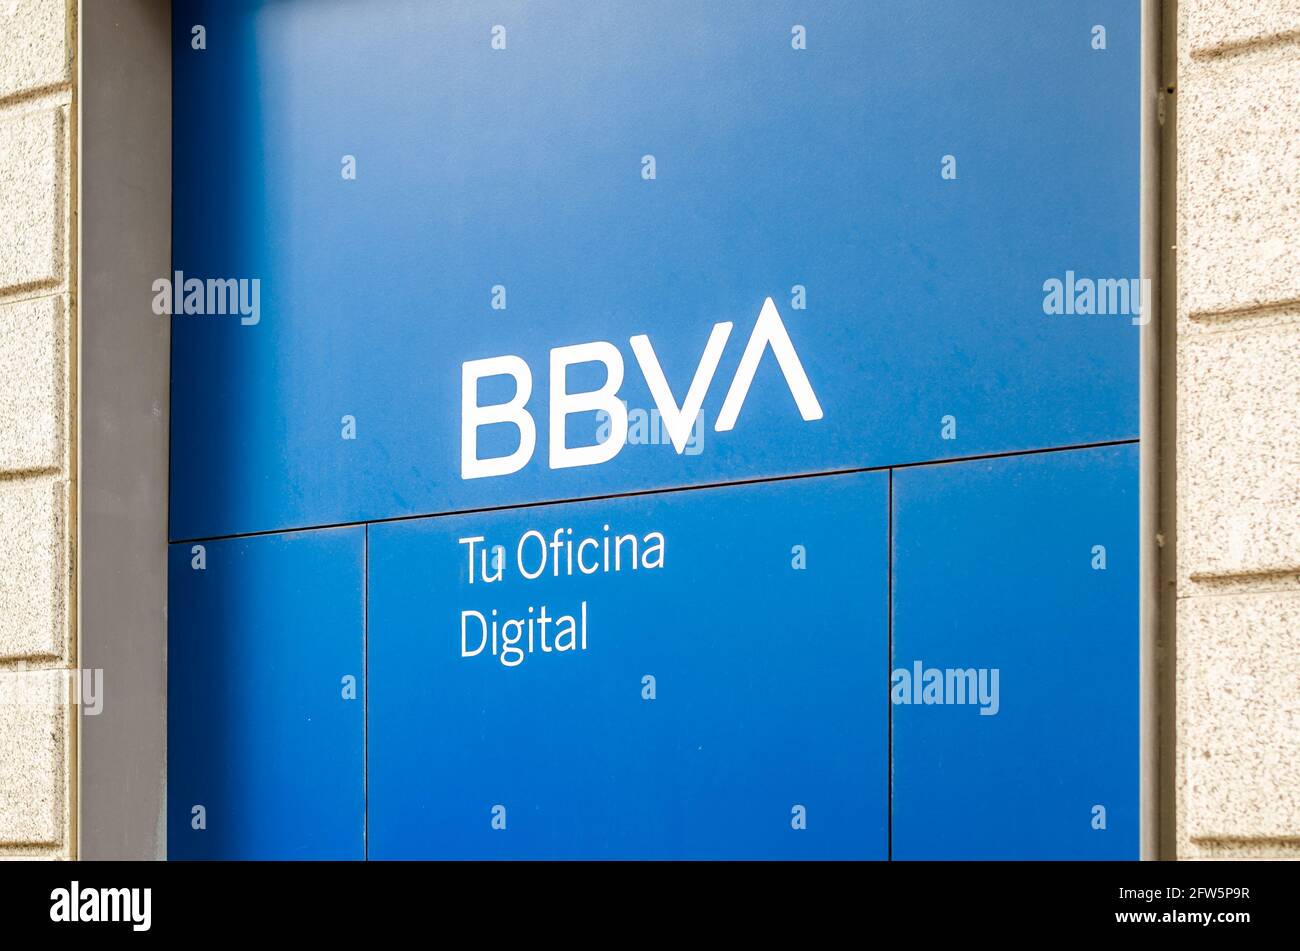 MADRID, SPAGNA – 12 MAGGIO 2021: Filiale bancaria BBVA (Banco Bilbao Vizcaya Argentaria) a Madrid, Spagna. BBVA è una multinazionale spagnola Foto Stock